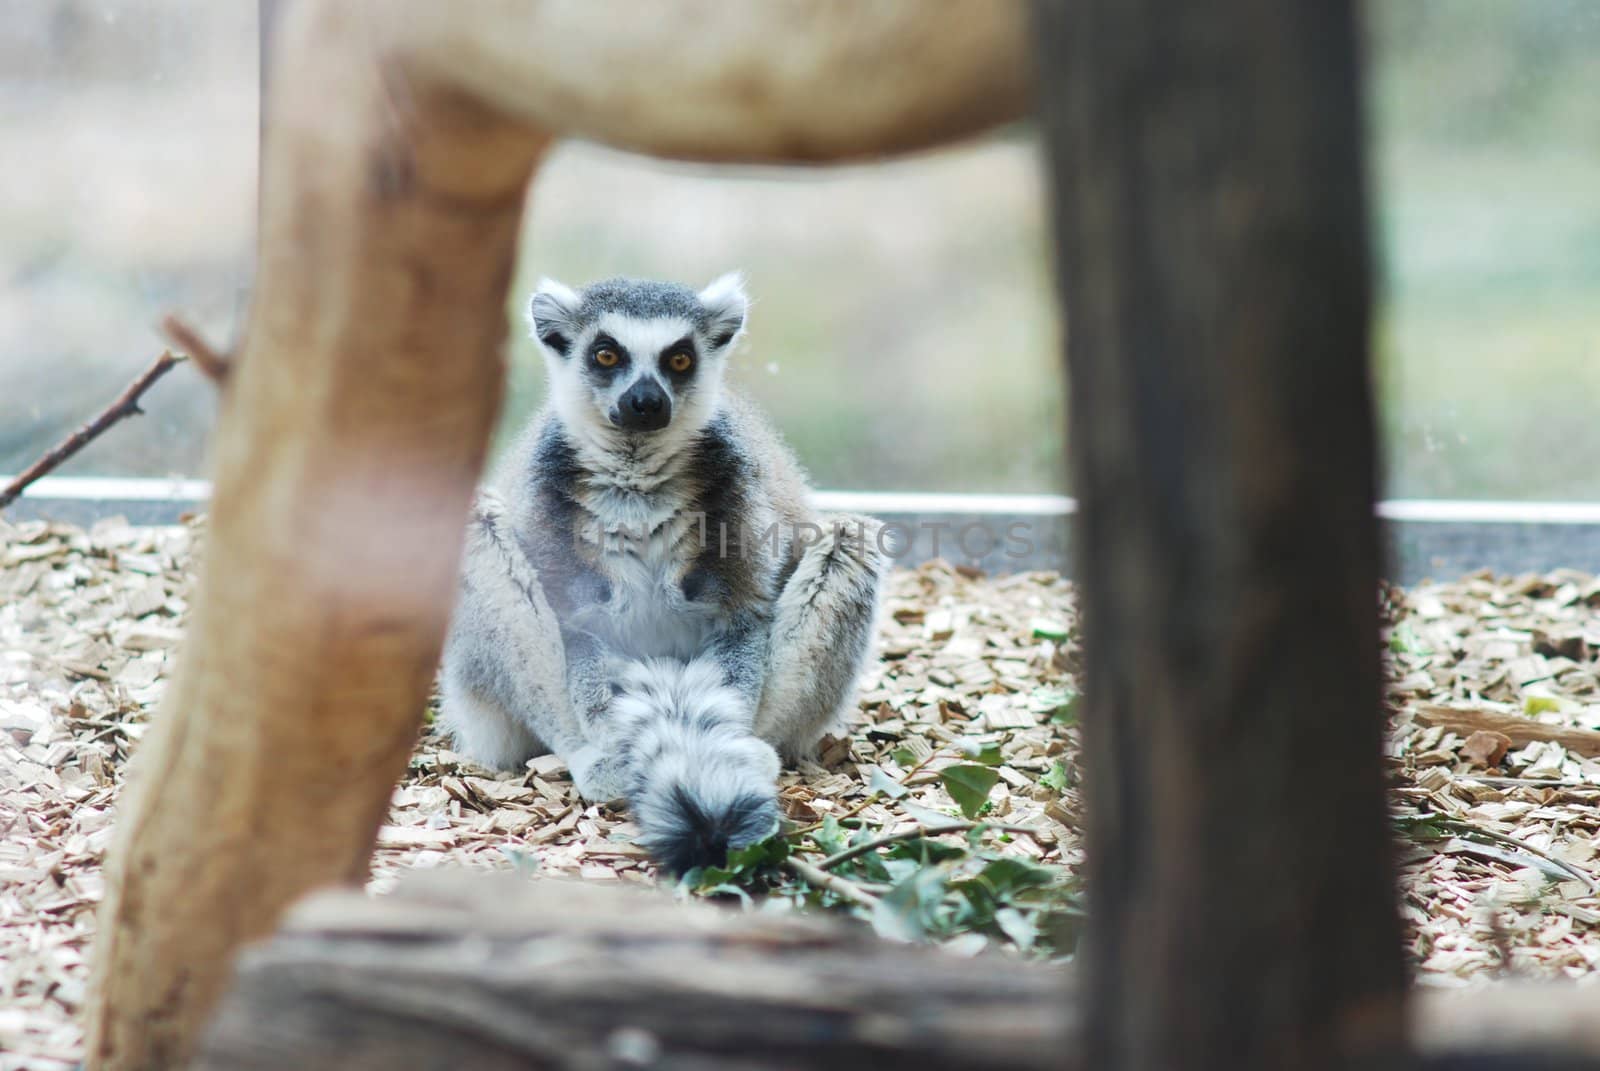 lemur by sarkao